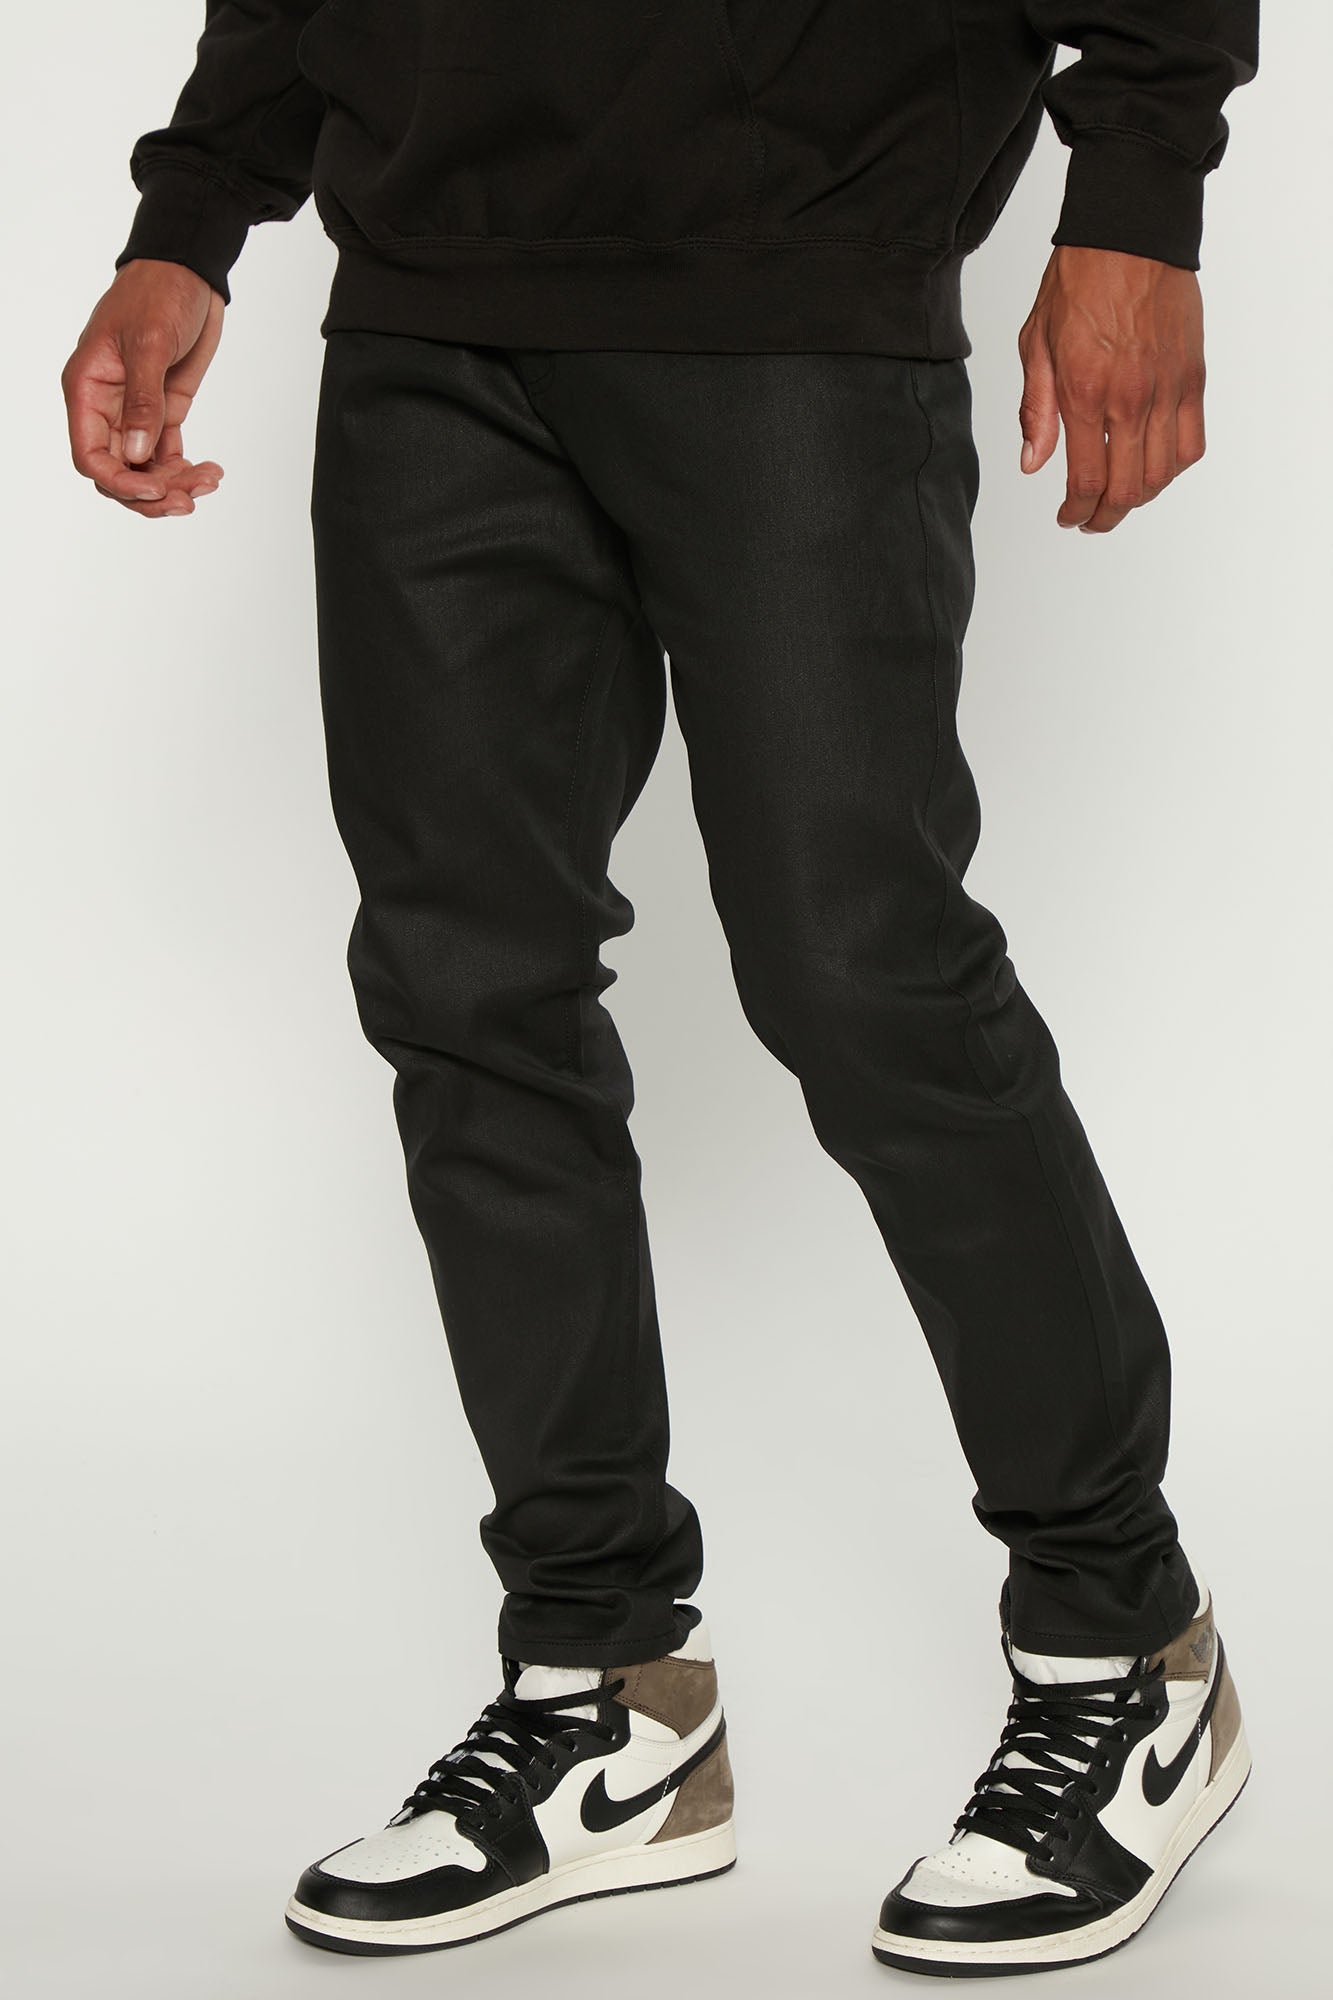 l'agence jeans Black Waxed Denim Stretch Skinny Size 25 | eBay